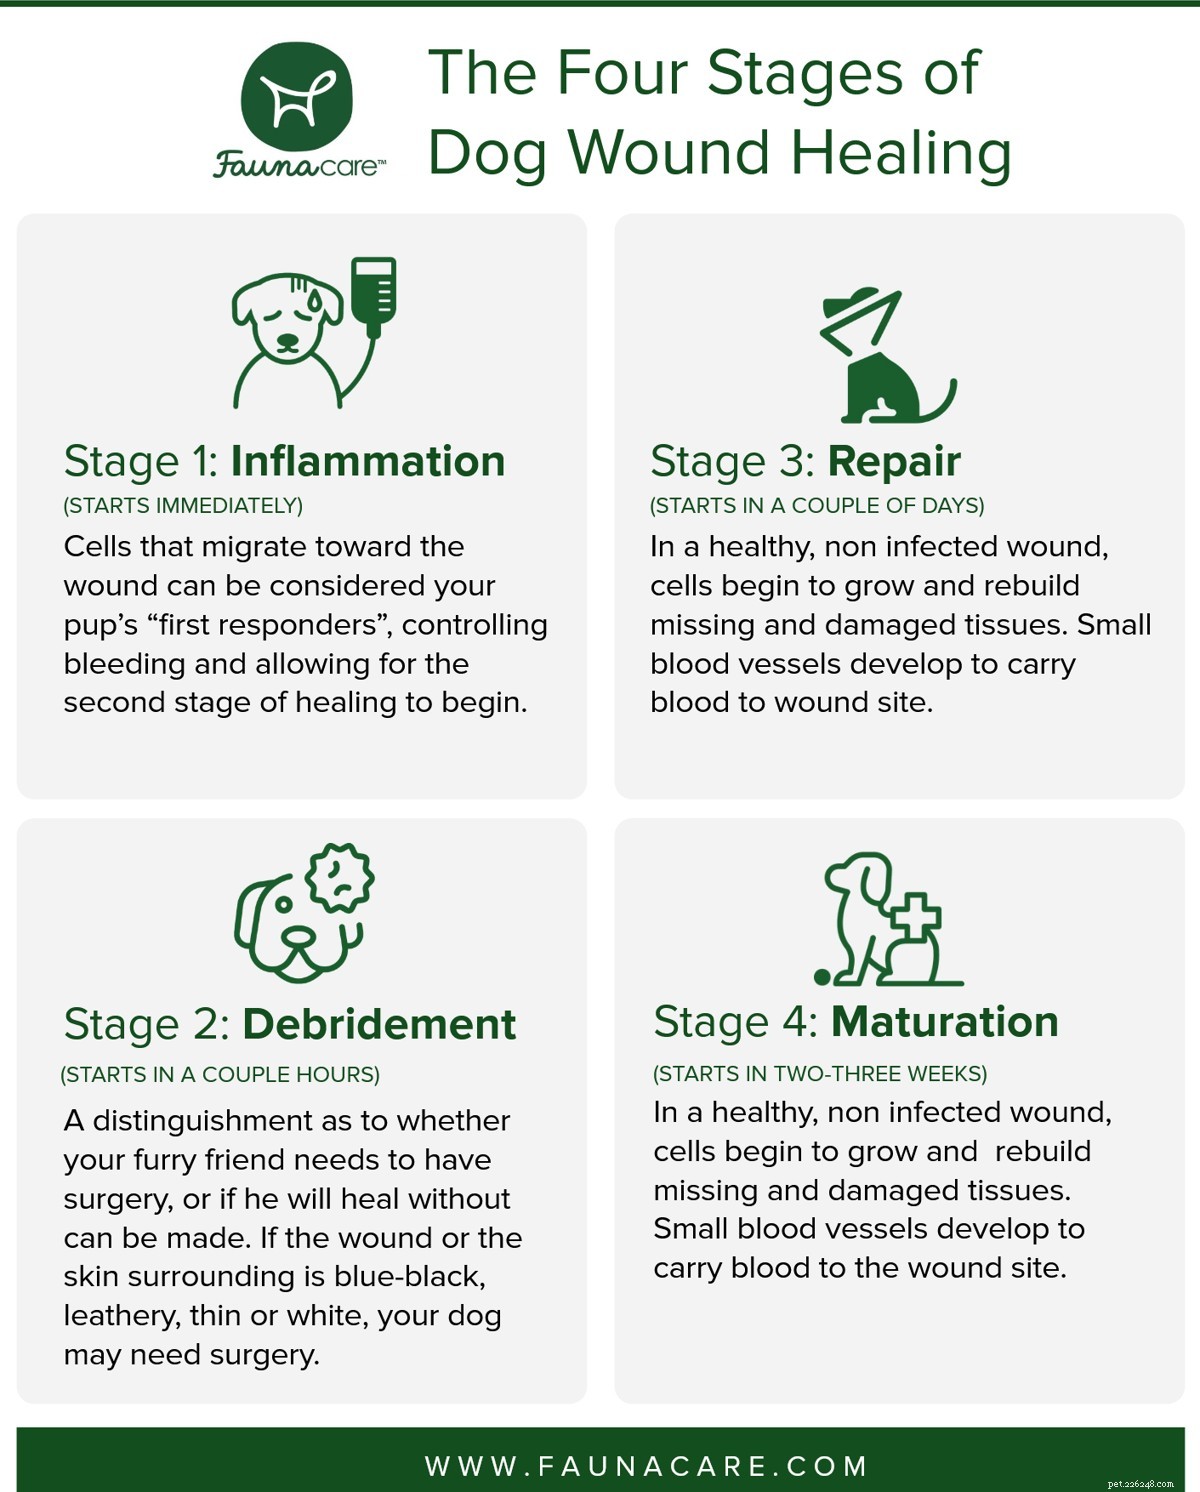 Os quatro estágios da cicatrização de feridas de cães